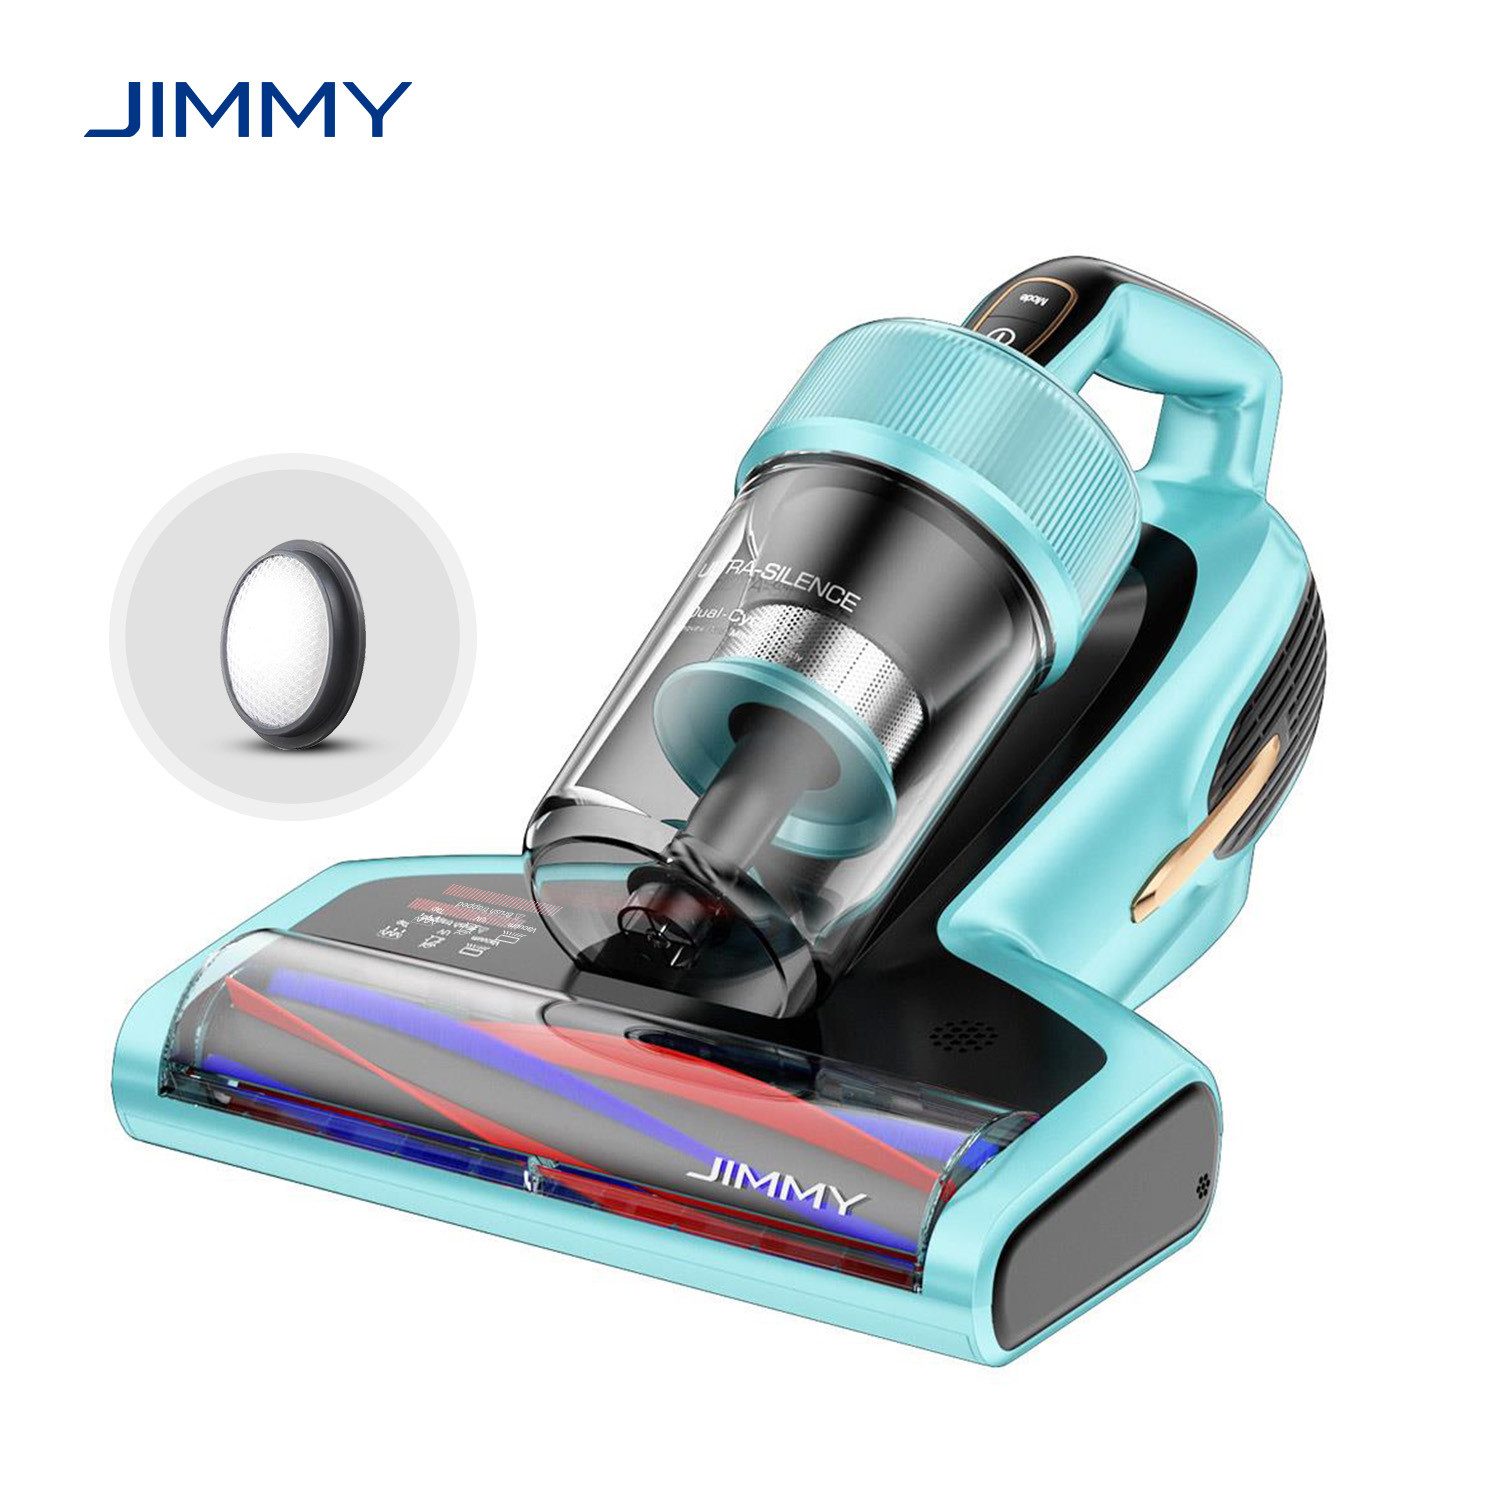 Jimmy Matratzenreinigungsgerät BX7 Pro 700W Intelligenter Anti-Milben-Staubsauger, 700,00 W, Stauberkennung & Ultraschall-Saugleistung Von 16 KPa